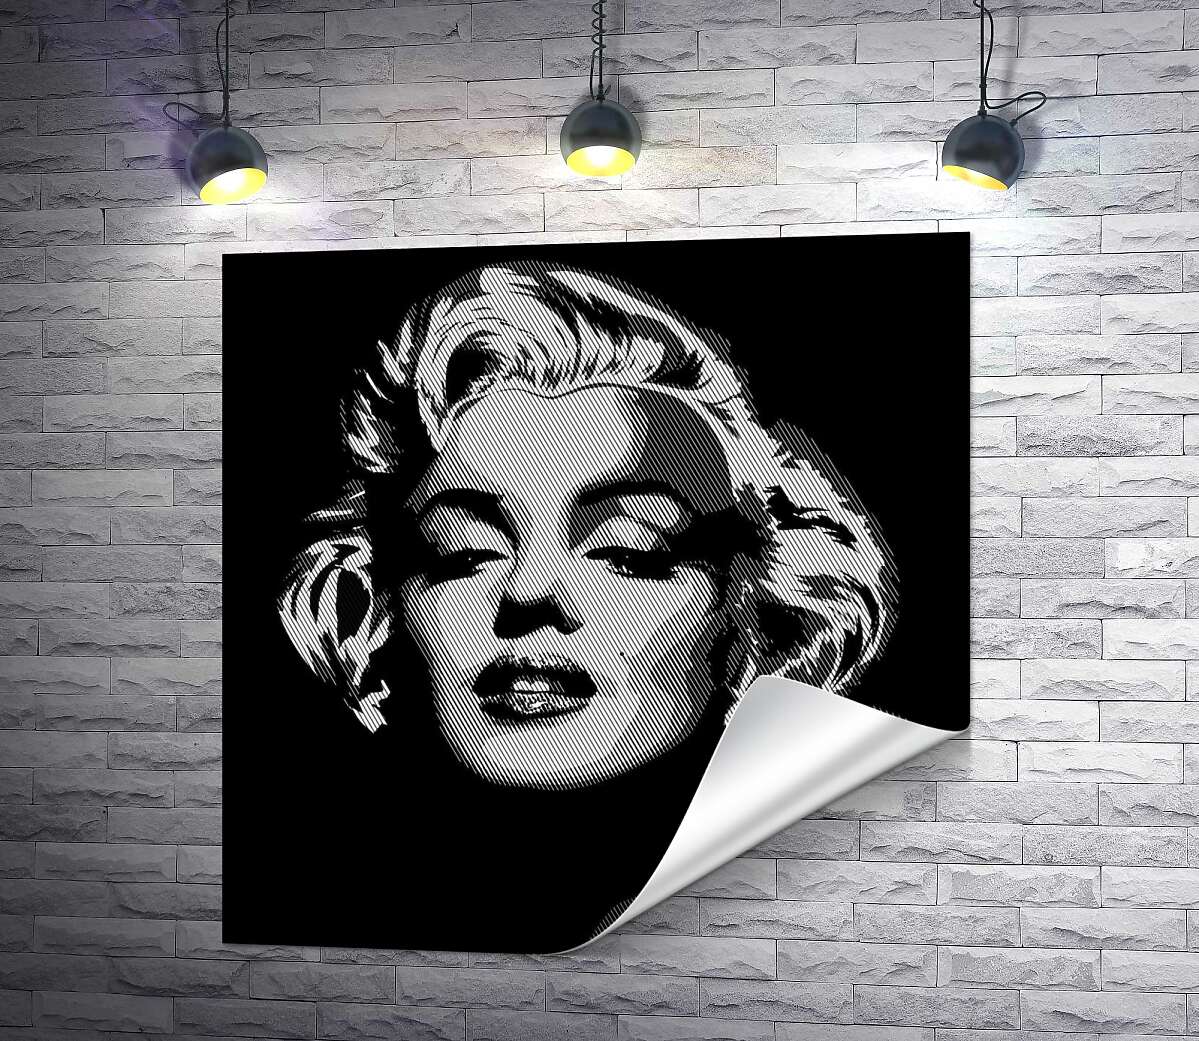 друк Відтінки сірого у портреті легендарної Мерілін Монро (Marilyn Monroe)